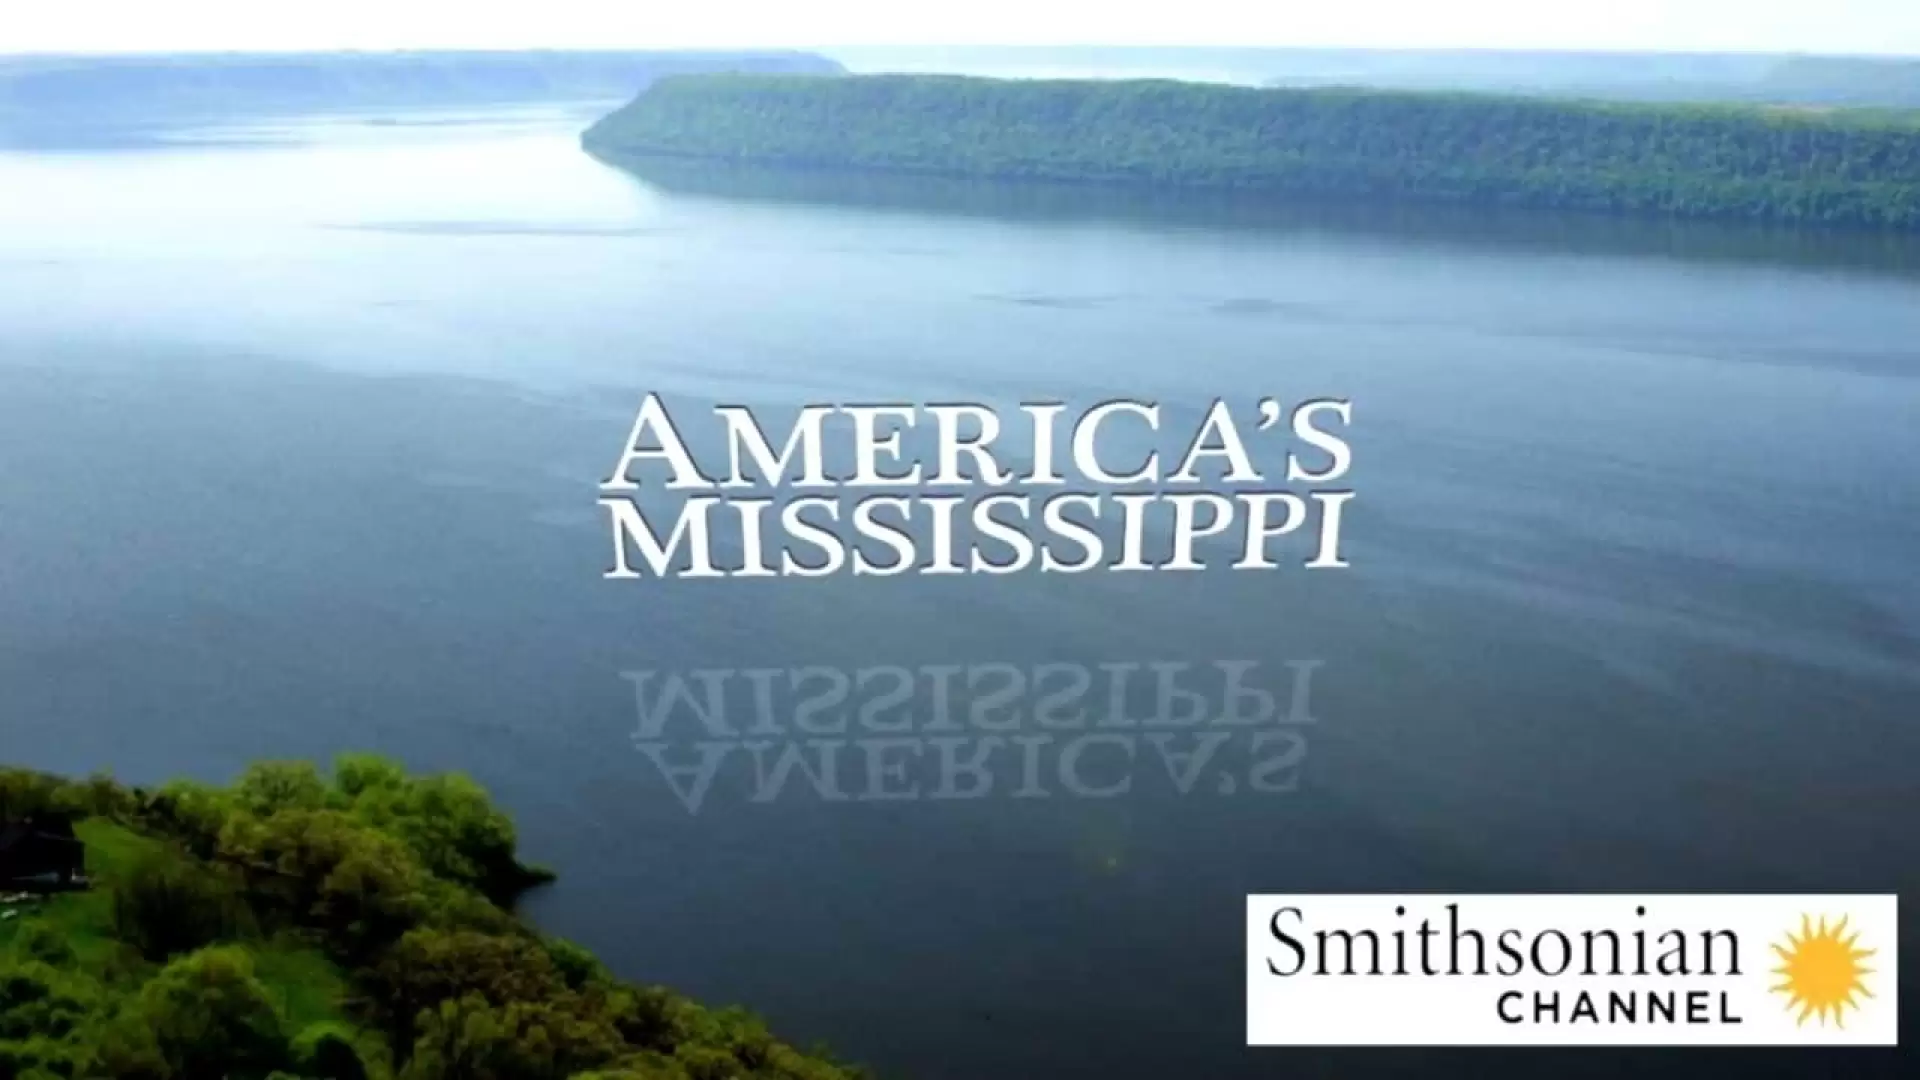 دانلود مستند America’s Mississippi 2018 (می سی سی پی آمریکا)